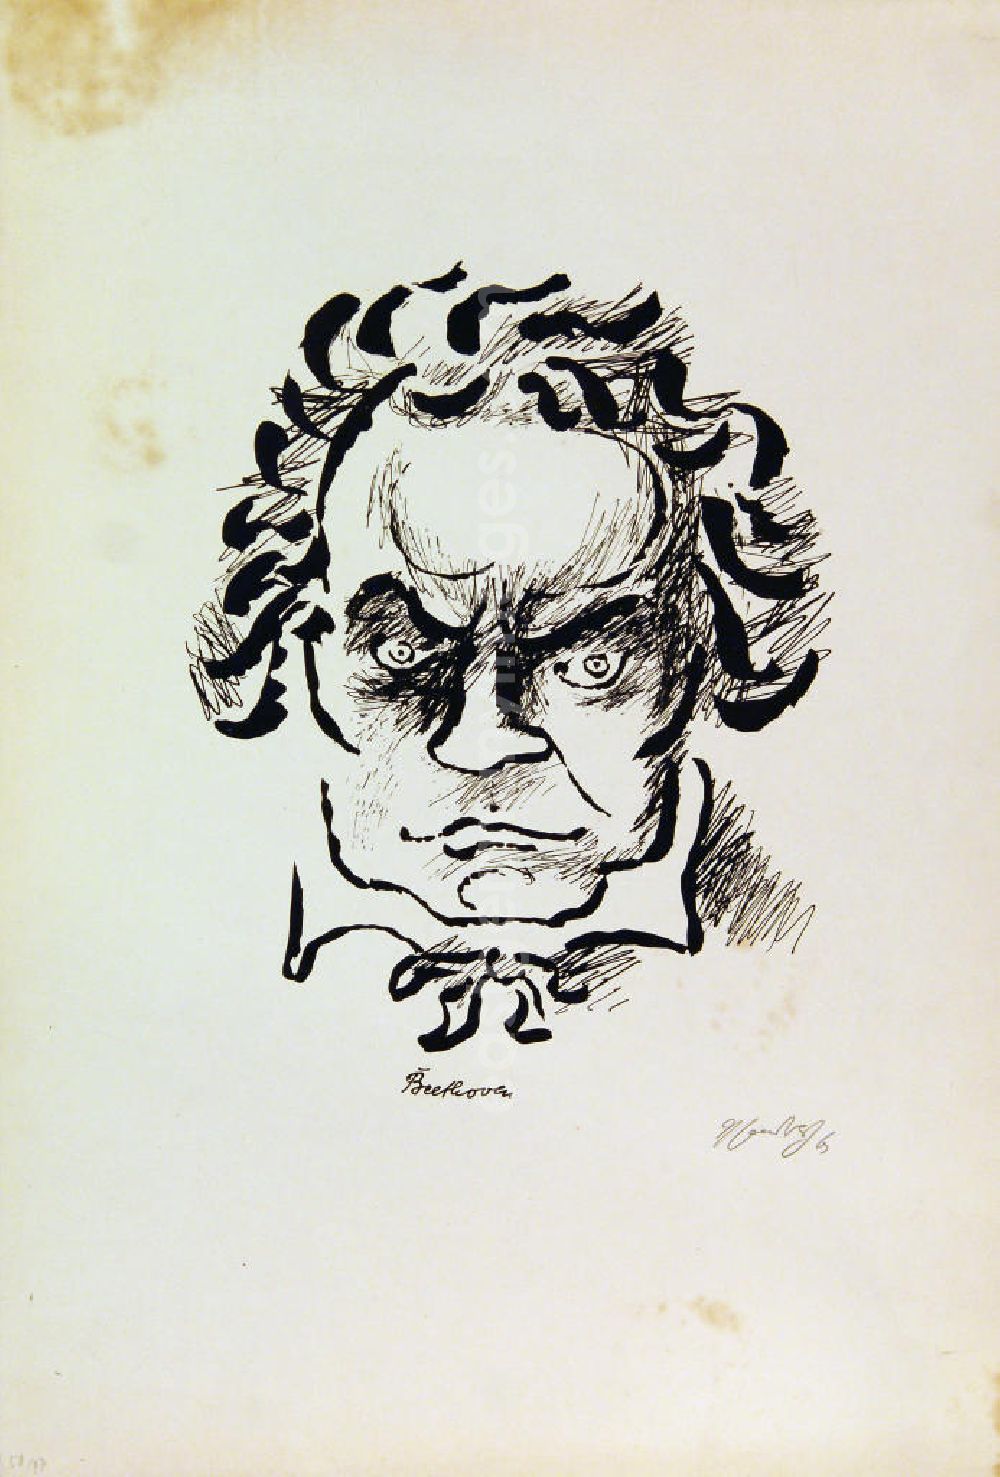 Berlin: Grafik von Herbert Sandberg über Ludwig van Beethoven (*16.12.1770 †26.03.1827) Beethoven aus dem Zyklus Meister der Musik aus dem Jahr 1963, 23,6x29,2cm Lithographie, handsigniert, 47/5